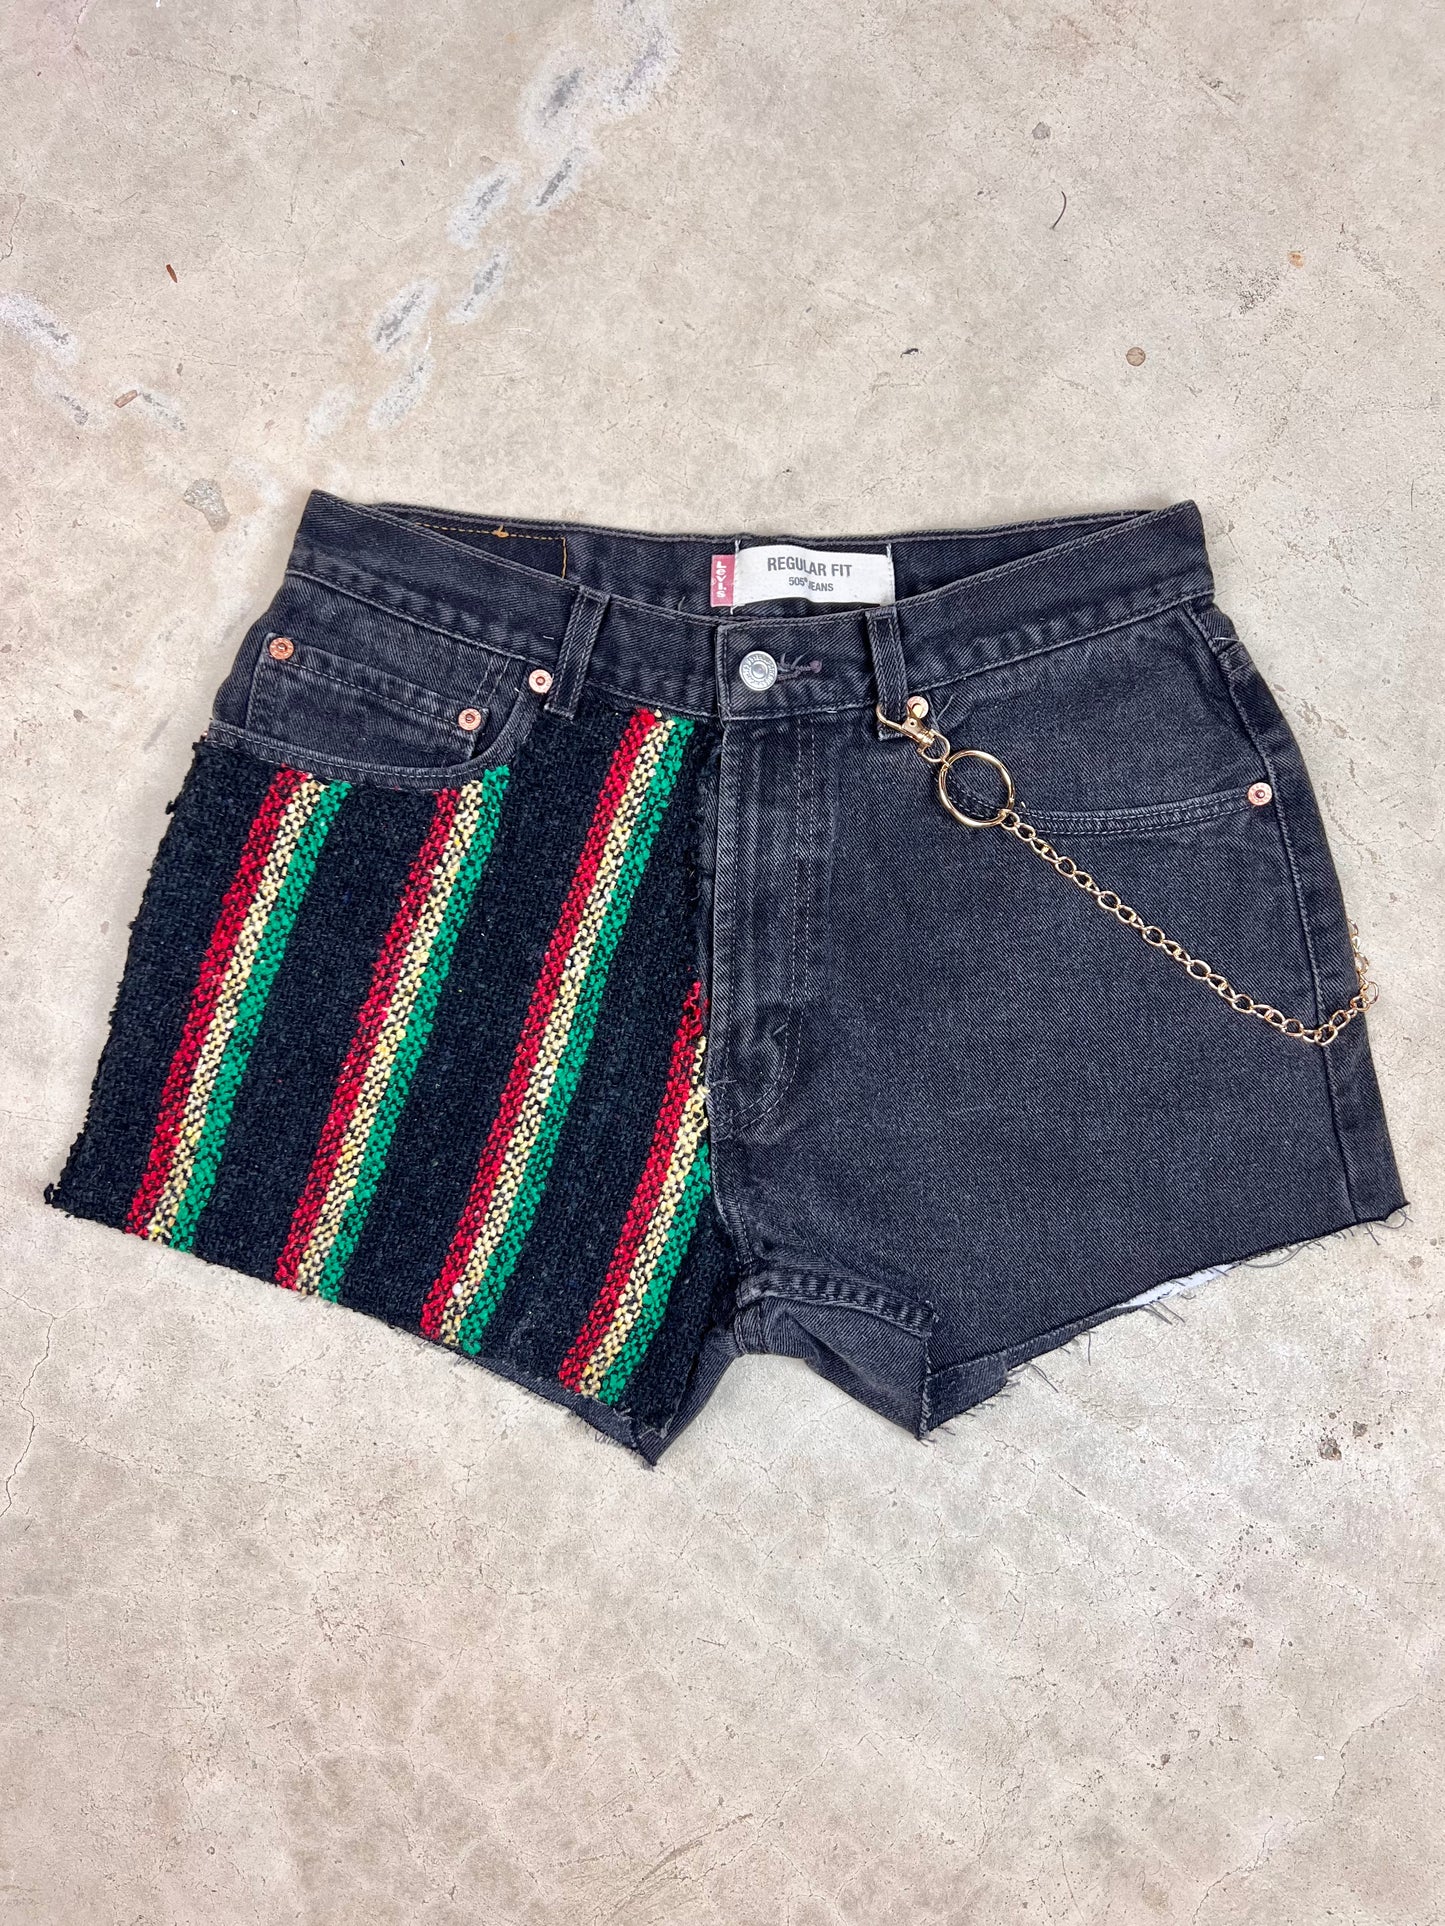 The Baja Black Denim Shorts - 33"